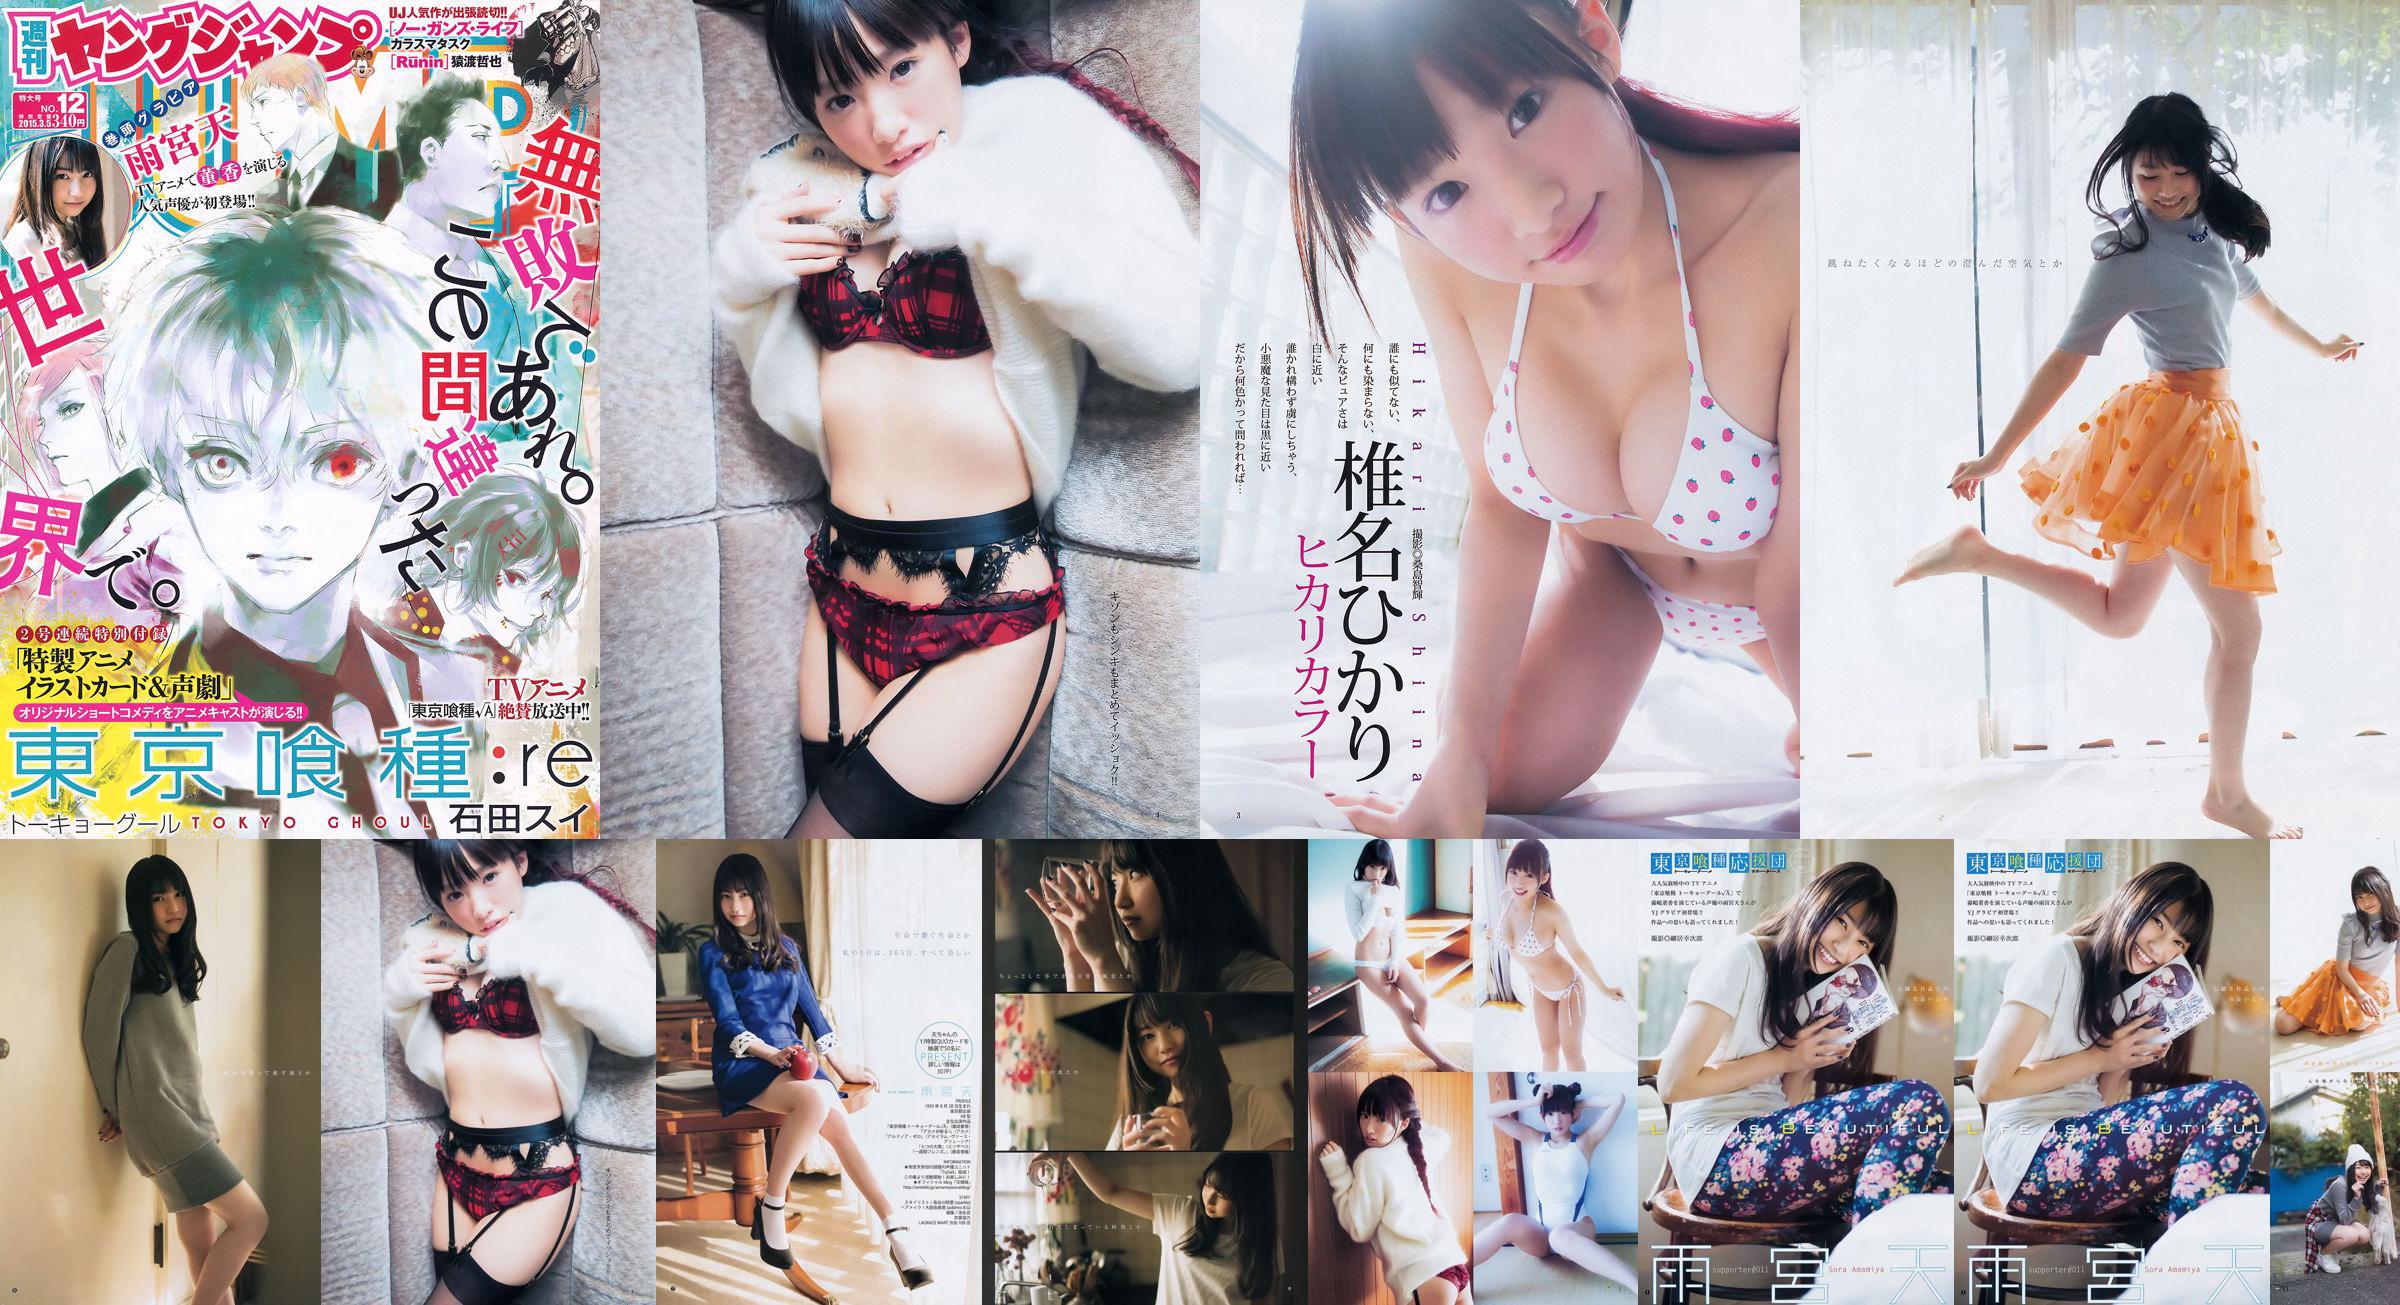 Amamiya Tian Shiina ひかり [Weekly Young Jump] 2015 No.12 Photo Magazine No.036afb Pagina 7